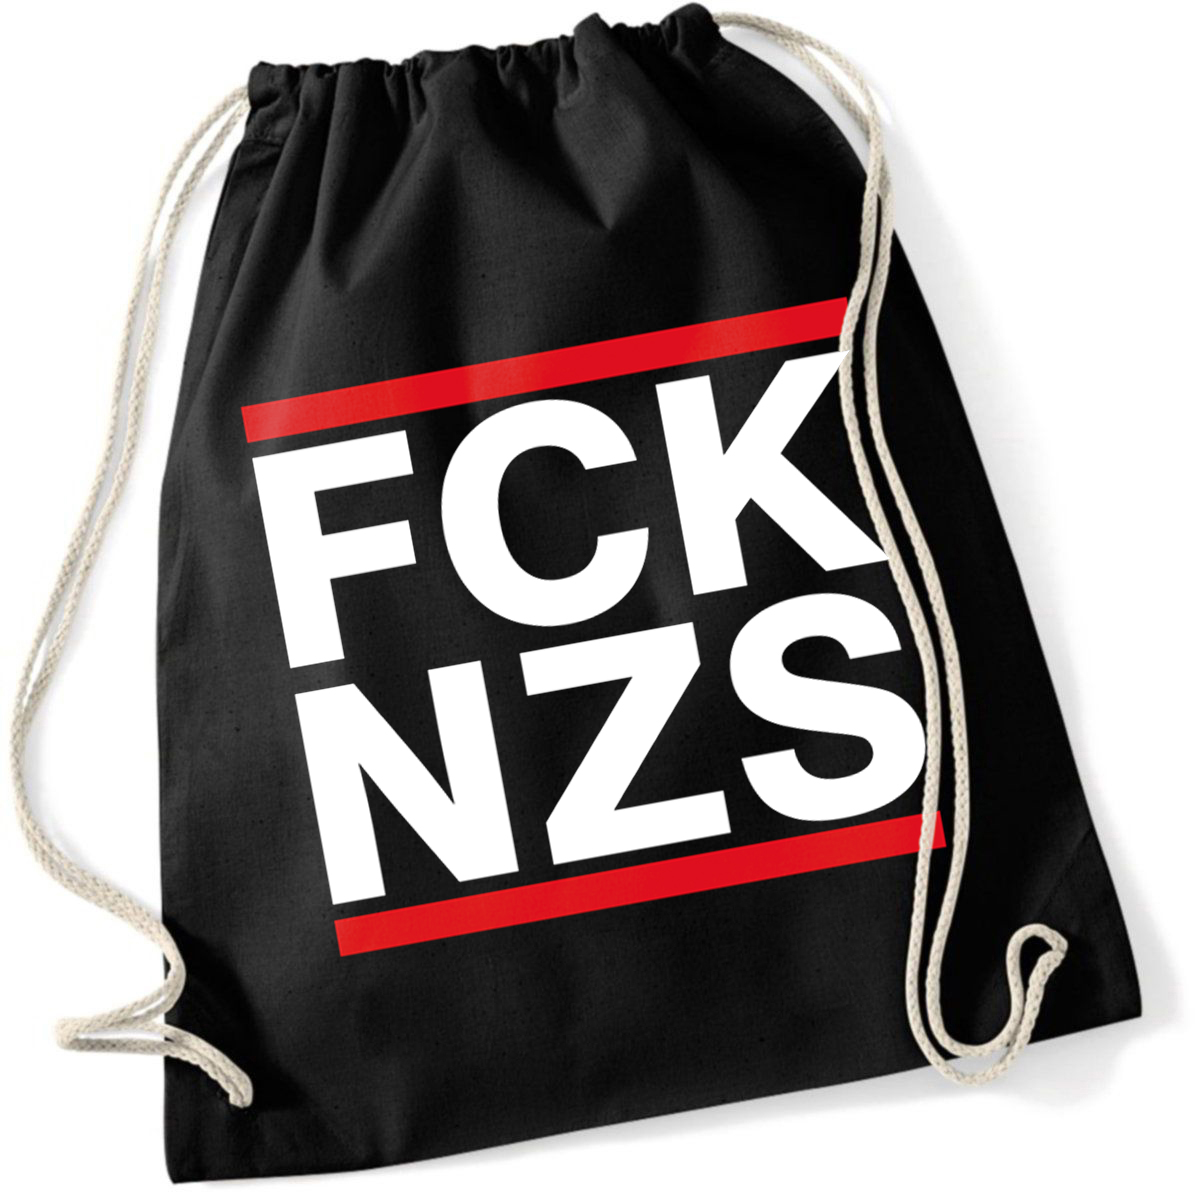 Art Worx Politik FUCK Nazis FCK NZS Hood